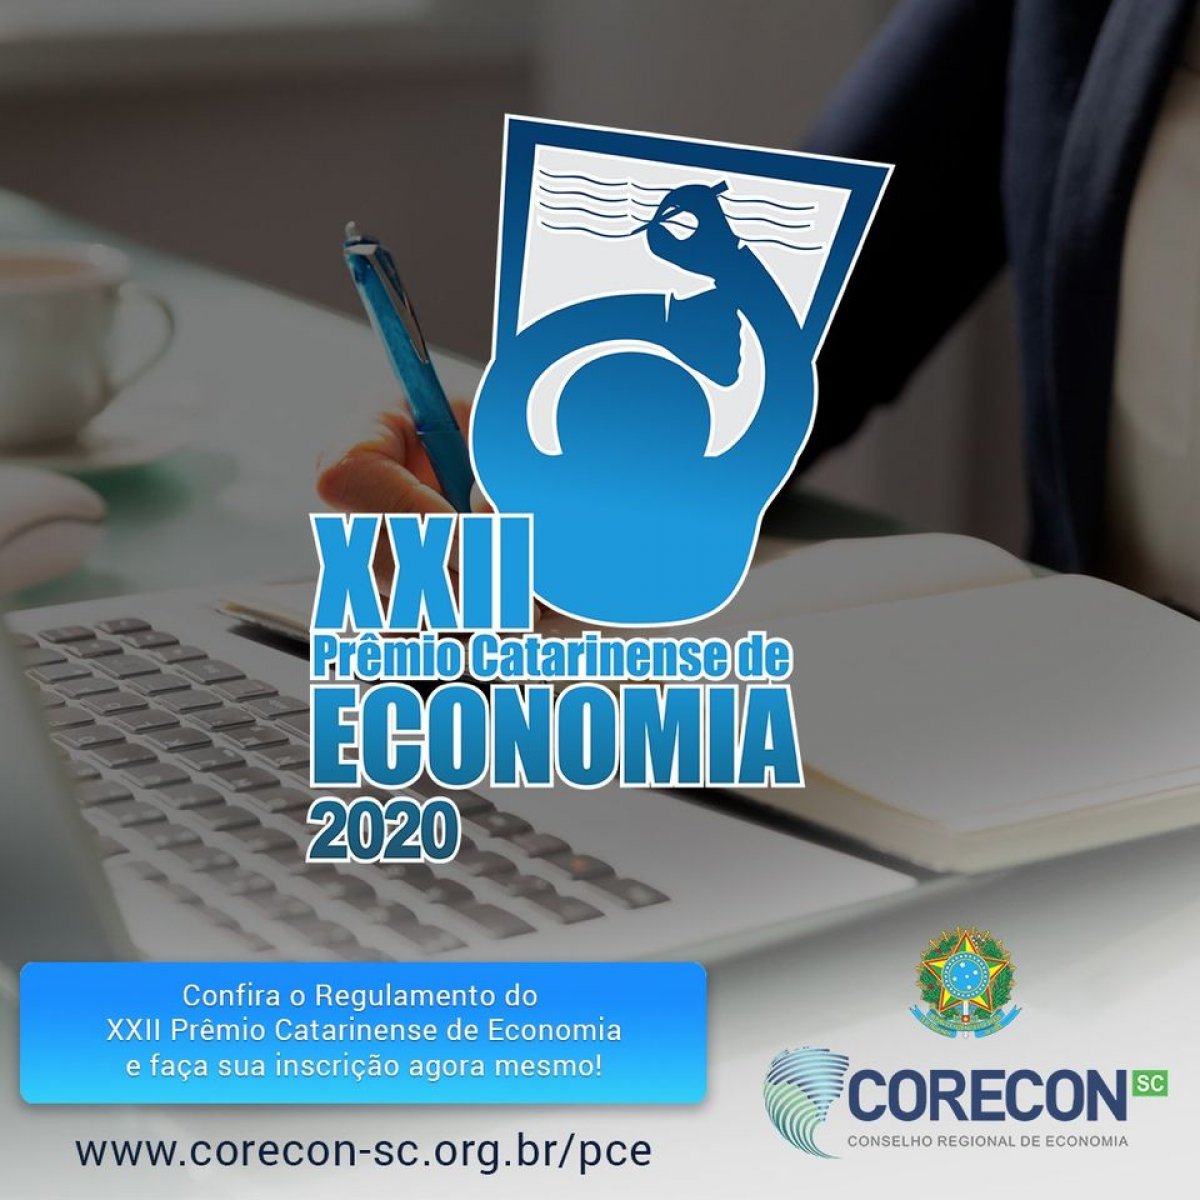 Prazo para inscrição no Prêmio Catarinense de Economia termina nesta sexta-feira, 16 - Corecon/SC